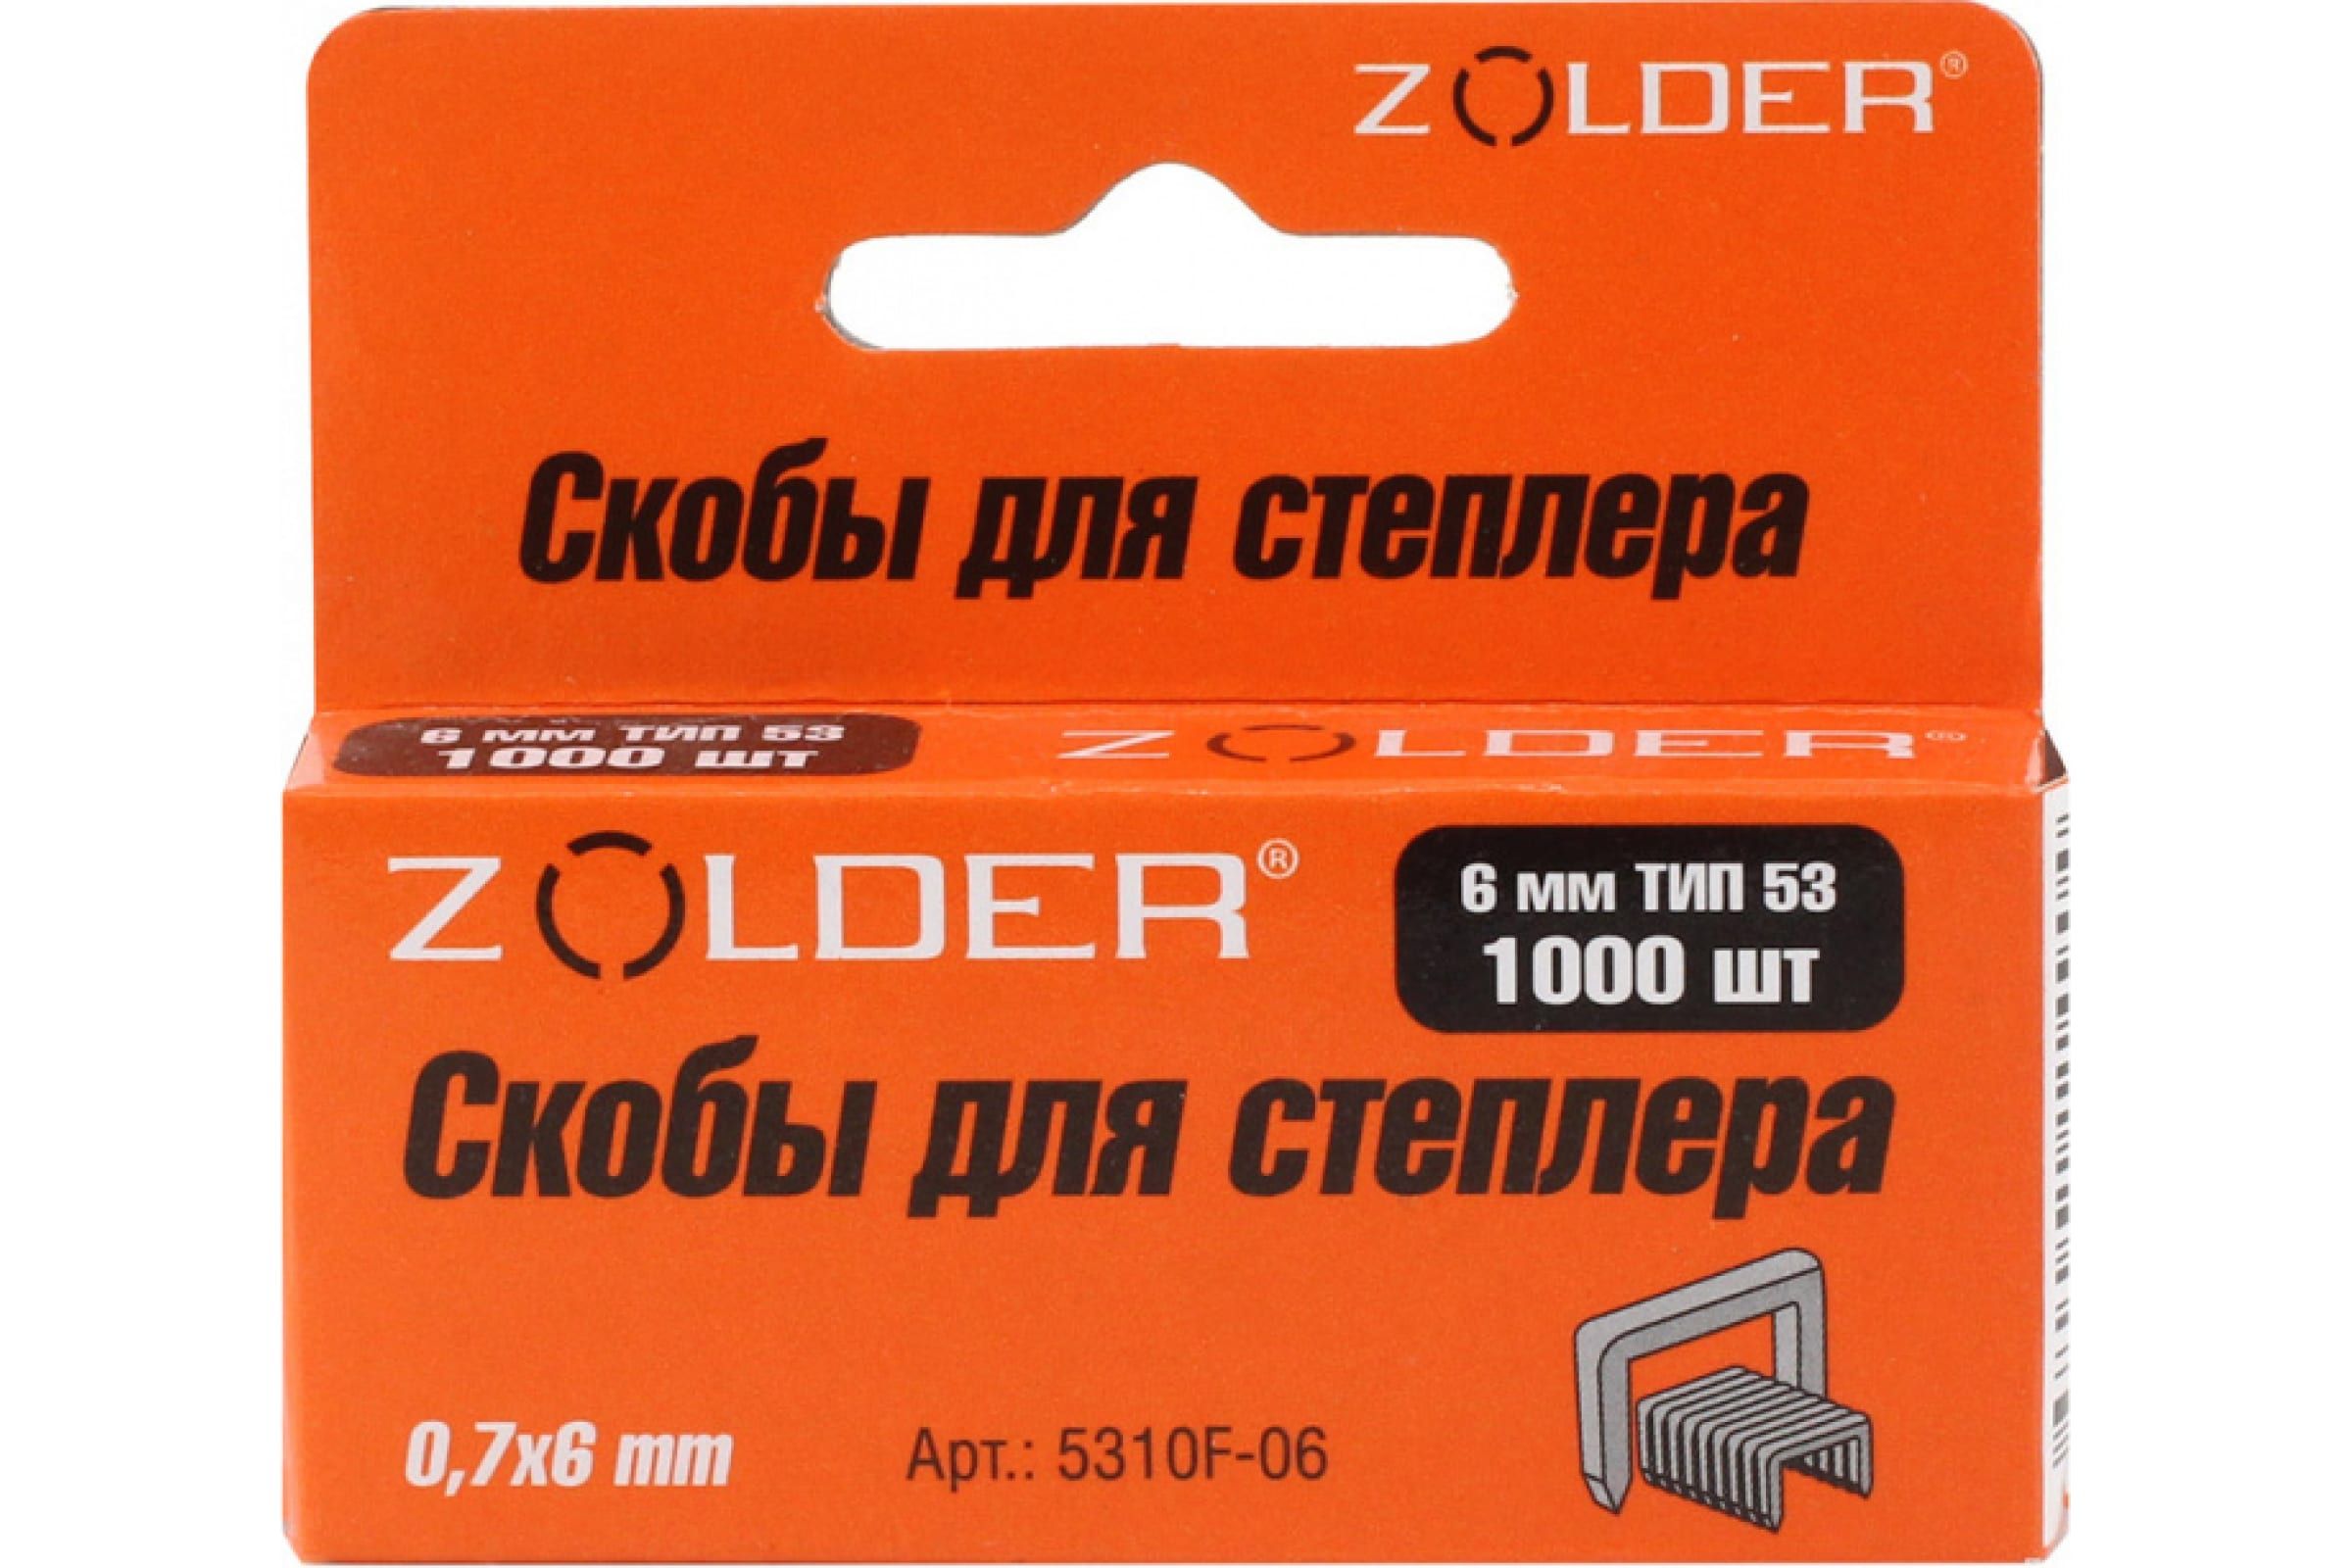 ZOLDER Запасные скобы 6 мм тип 53 /1000шт/ 5310F-006 усиленные запасные скобы zolder